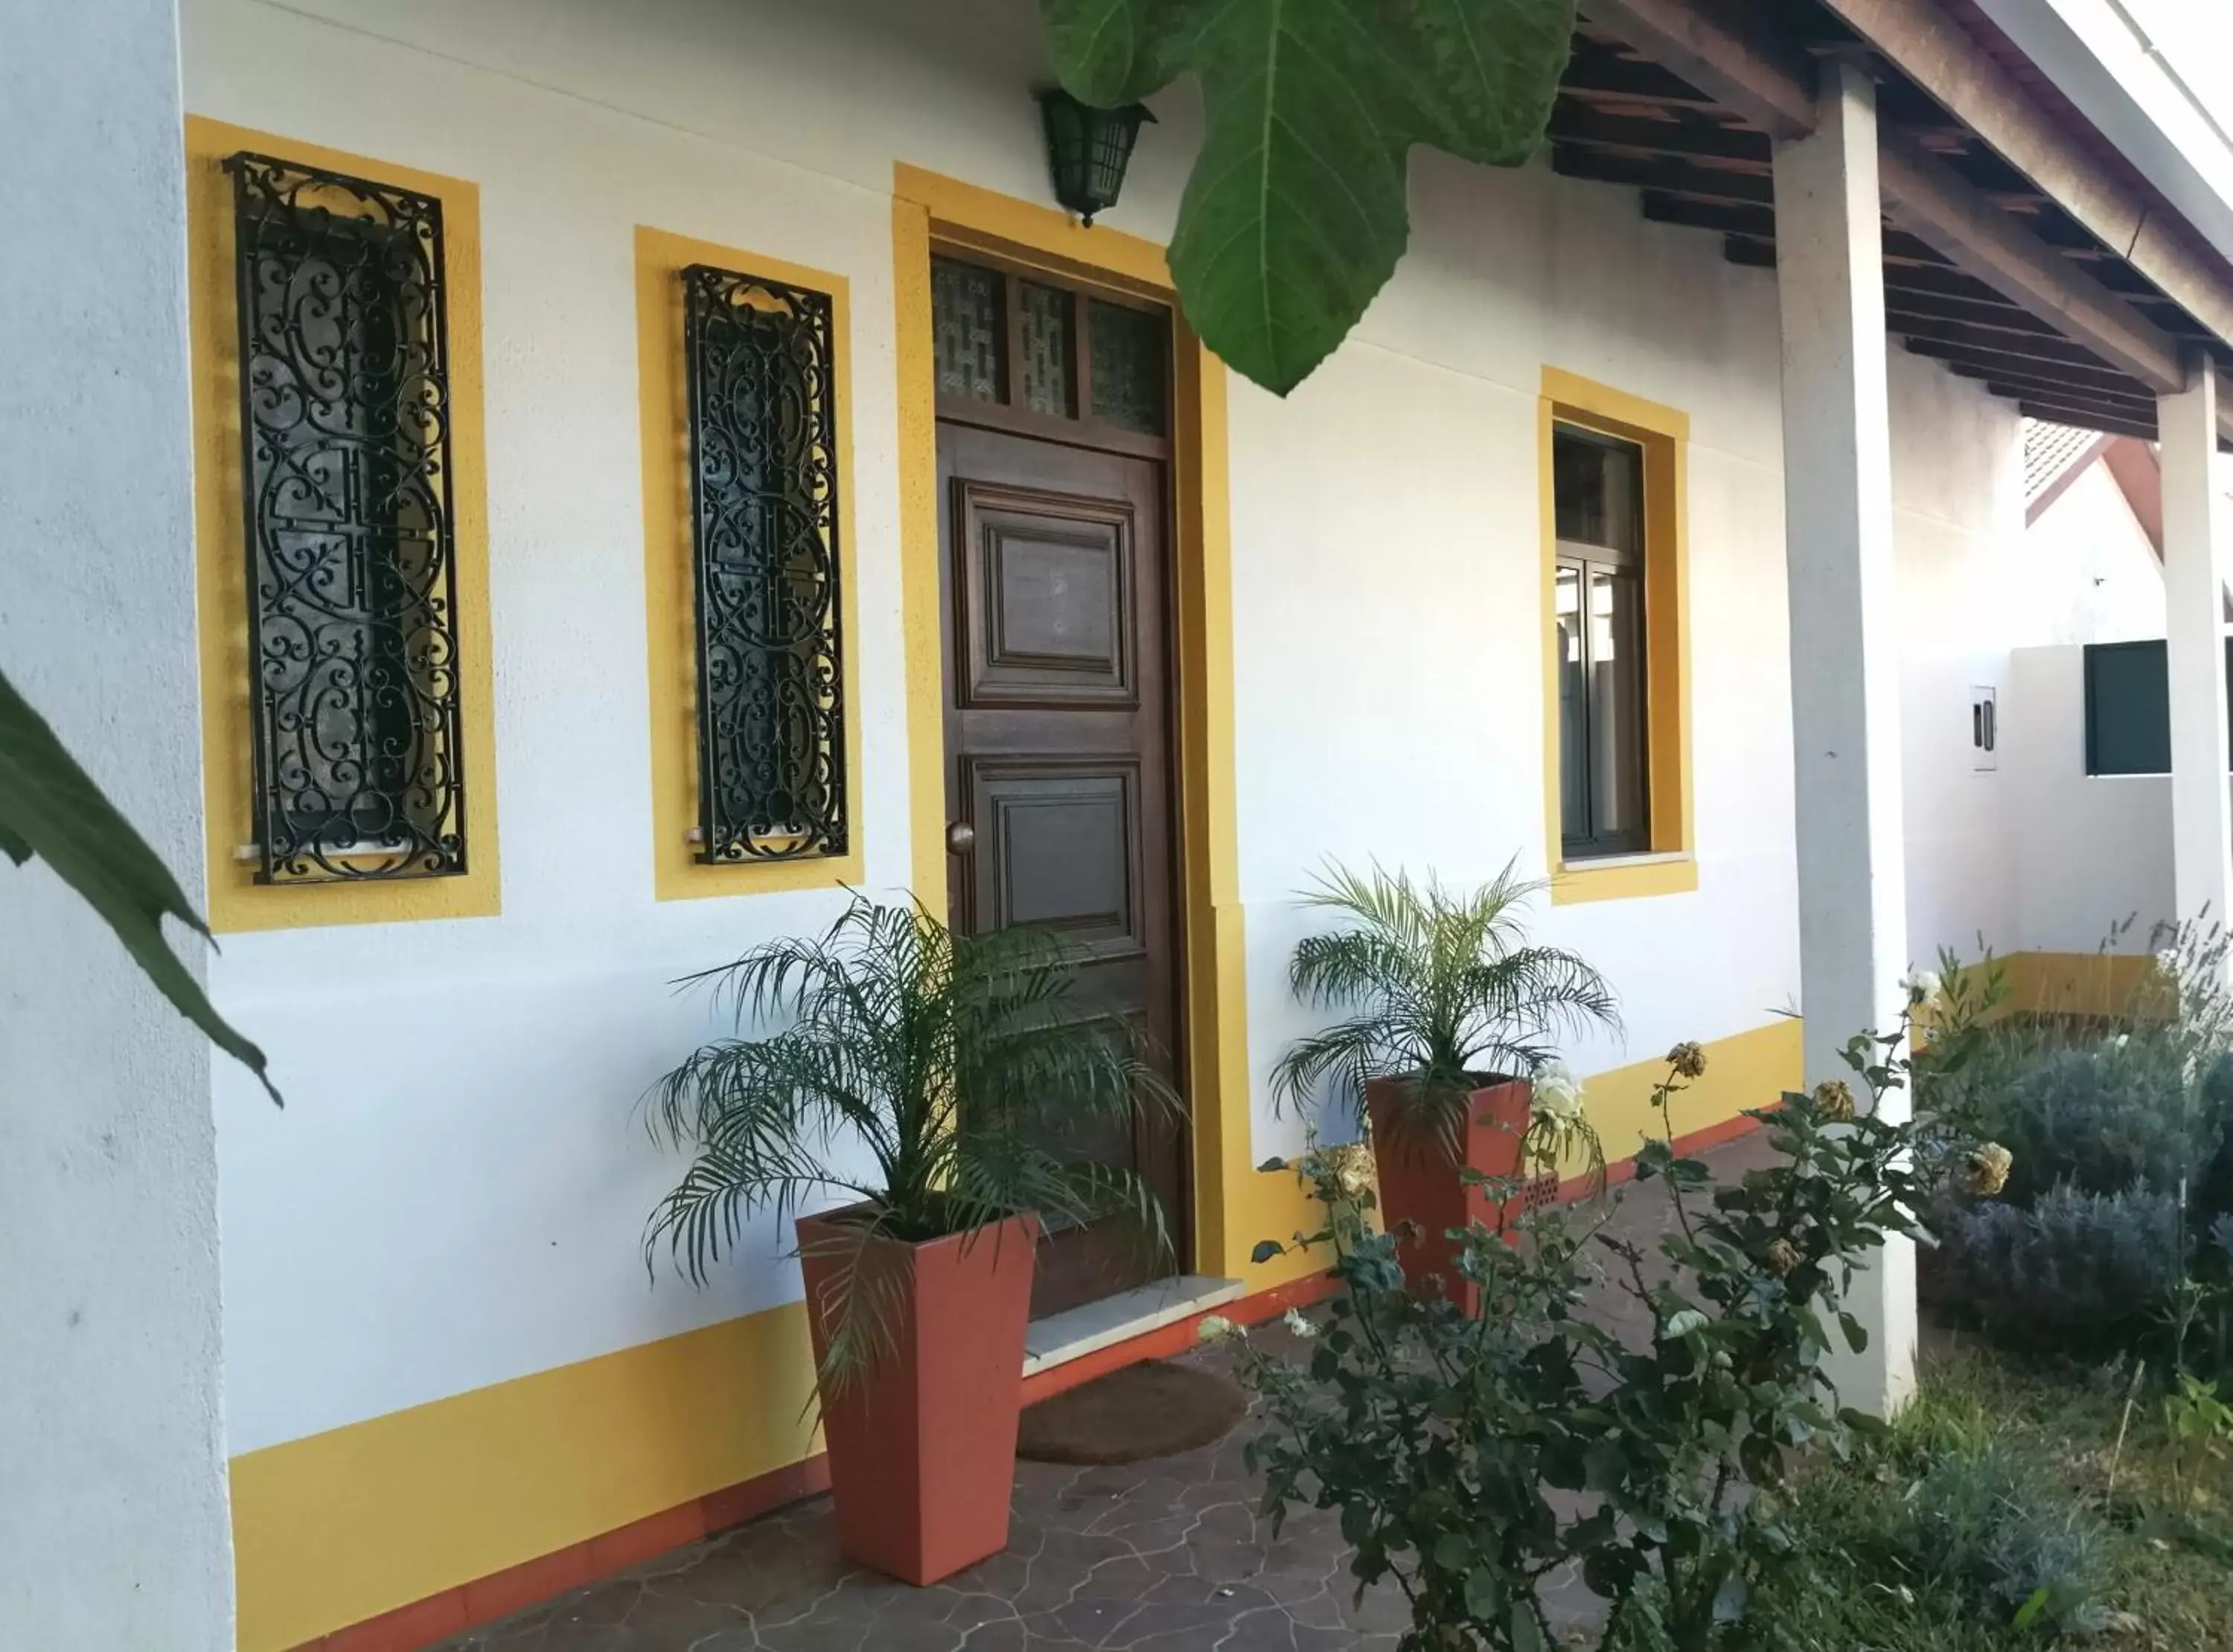 Facade/entrance in Casa dos Pingos de Mel